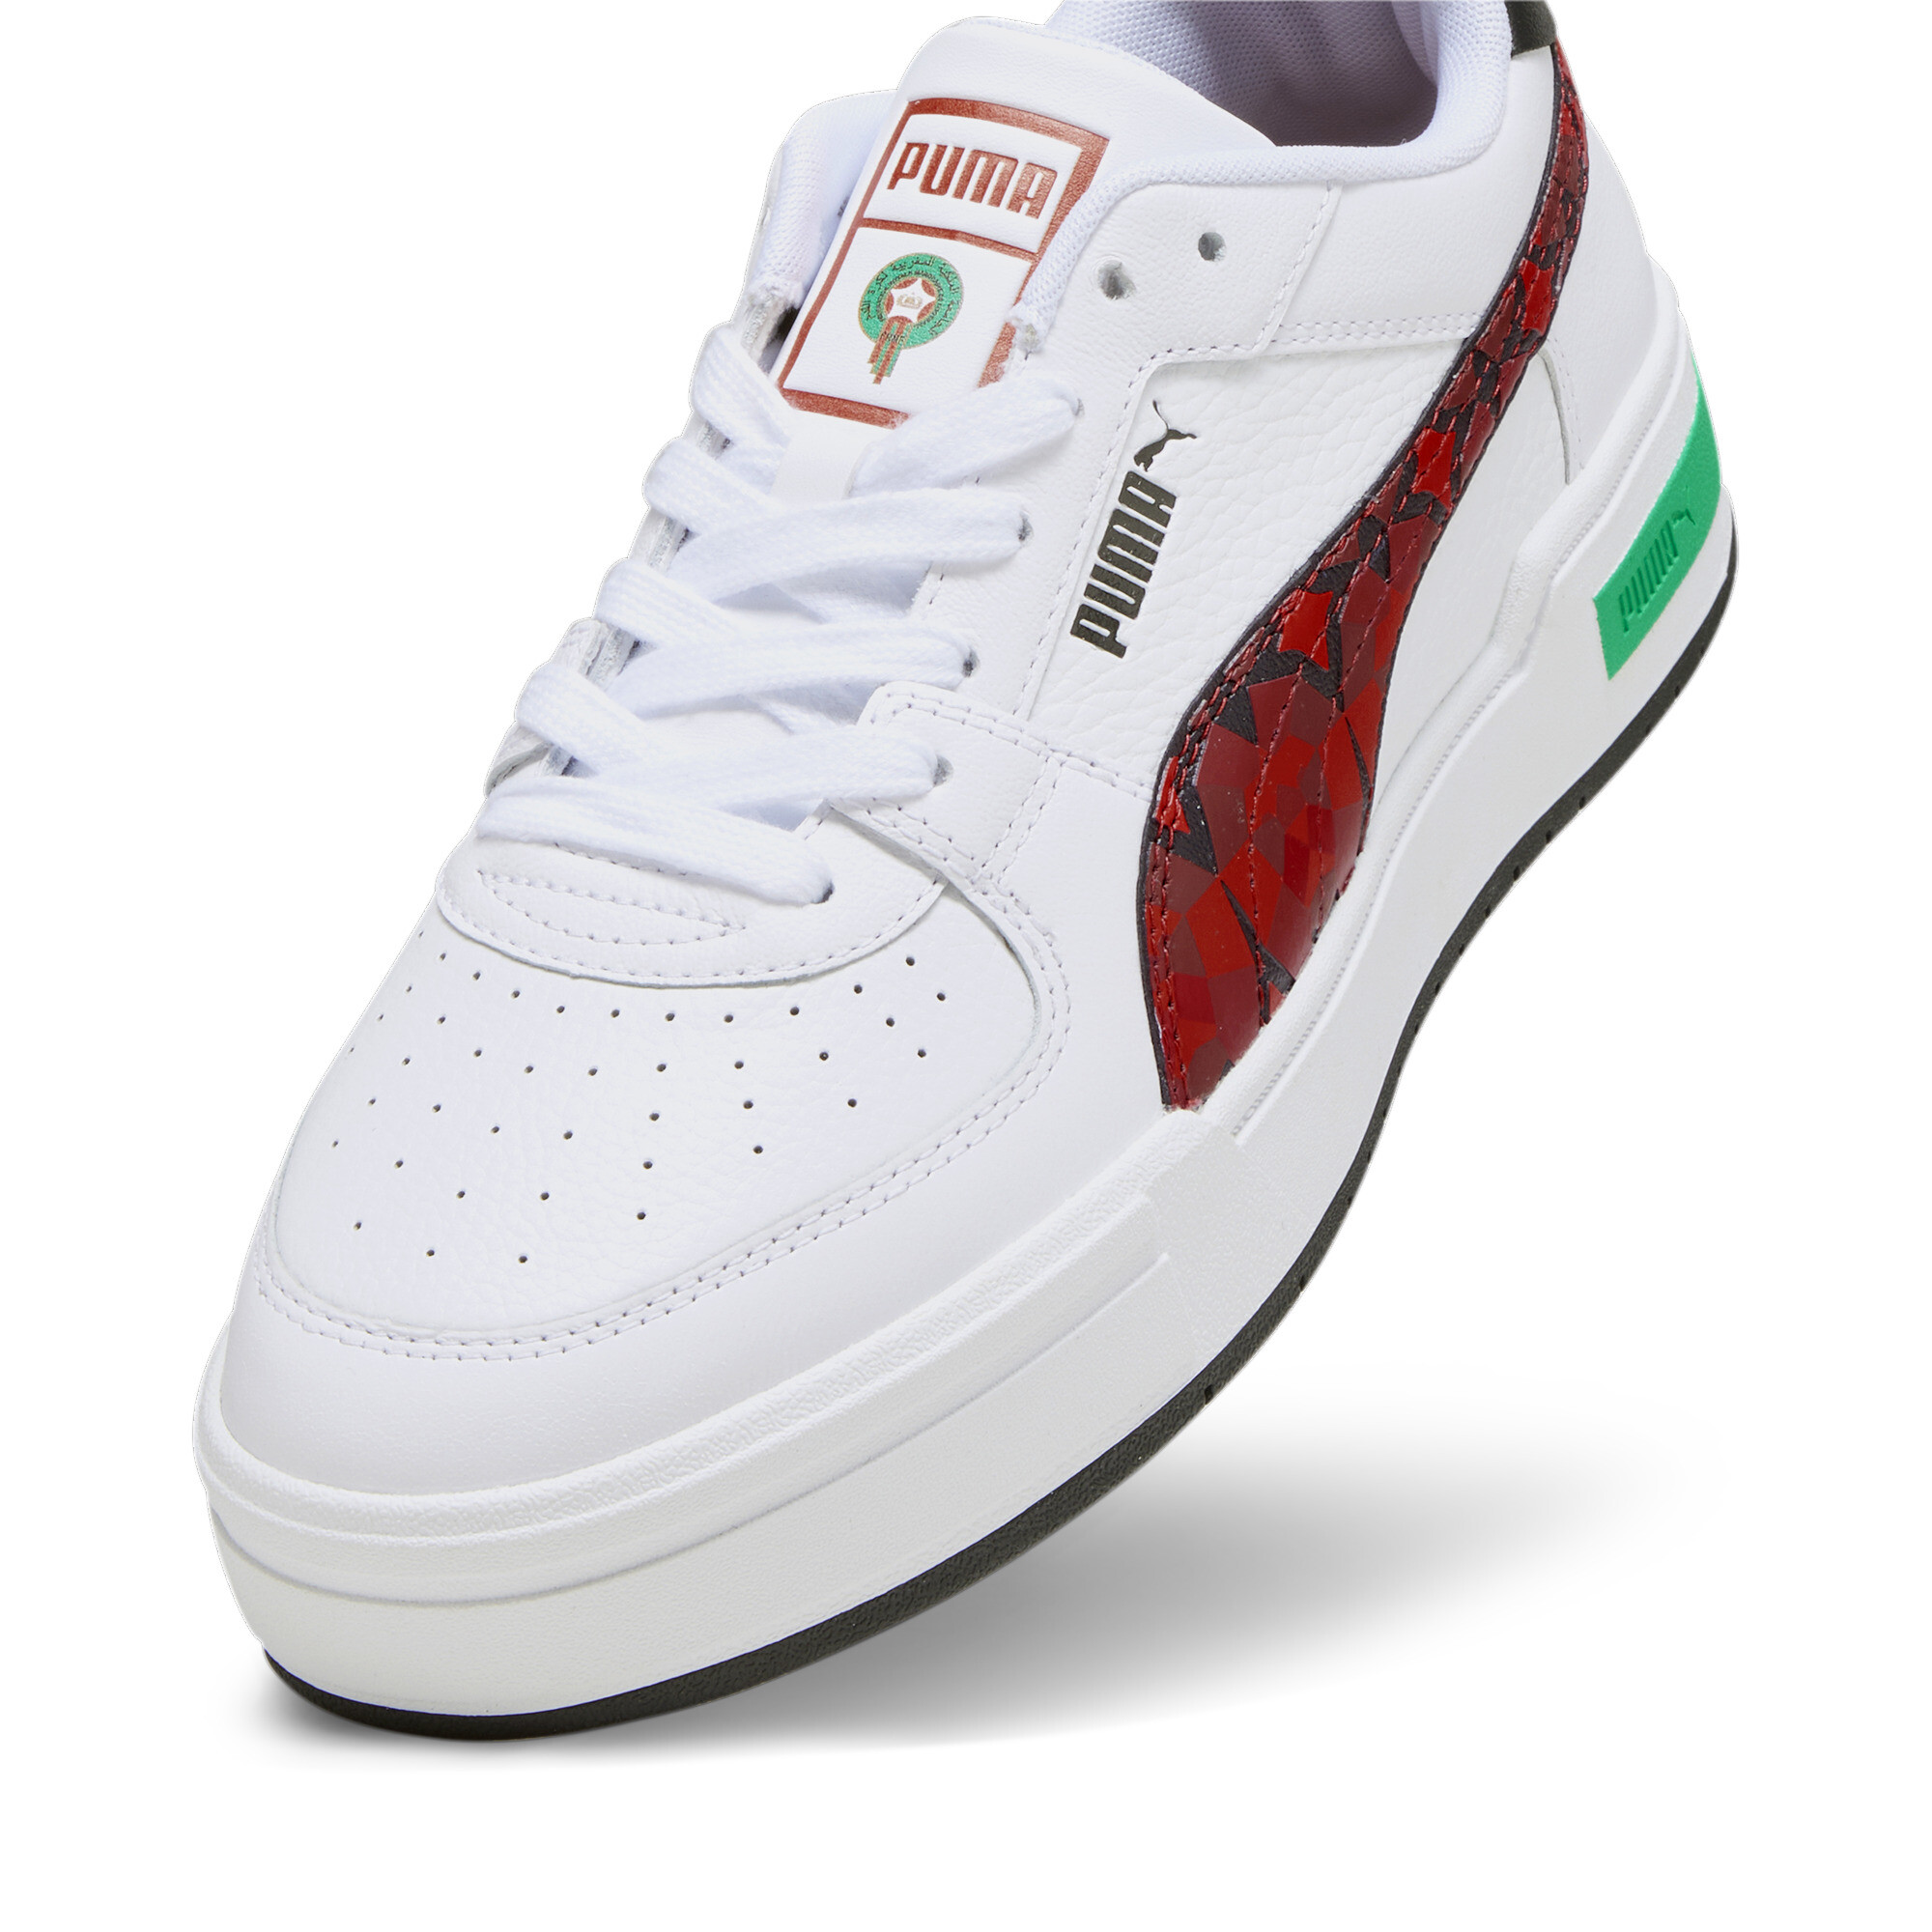 Men's PUMA CA Pro Morocco Football Sneakers In White, Size EU 42